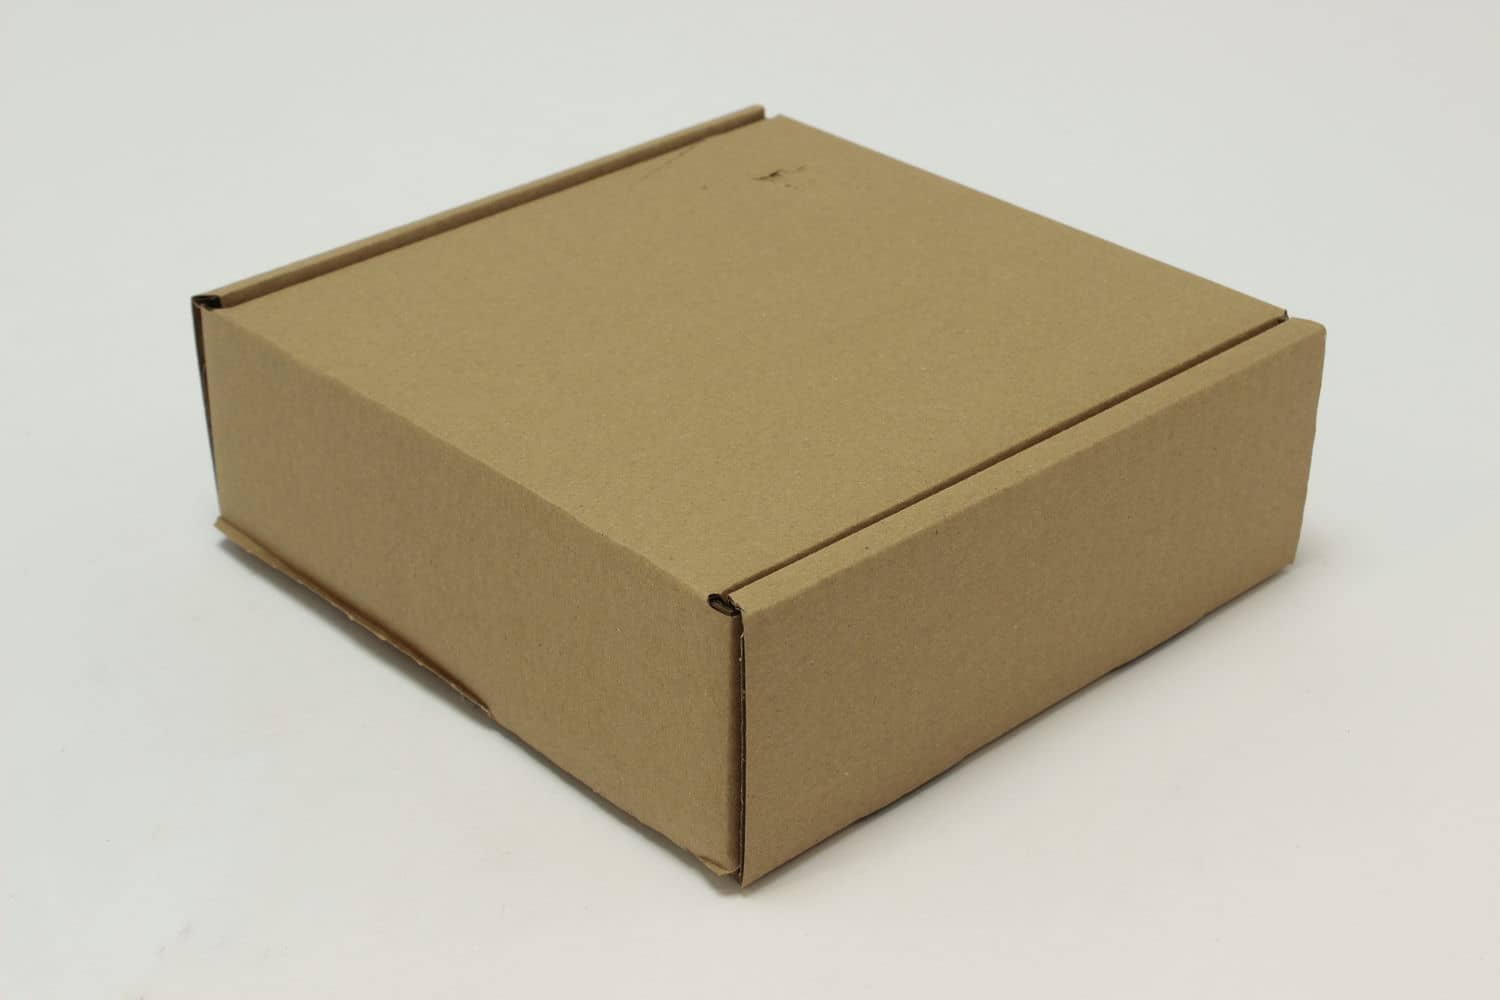 Самосборная картонная коробка 200x200x70 мм , короб из микрогофрокартона Т22